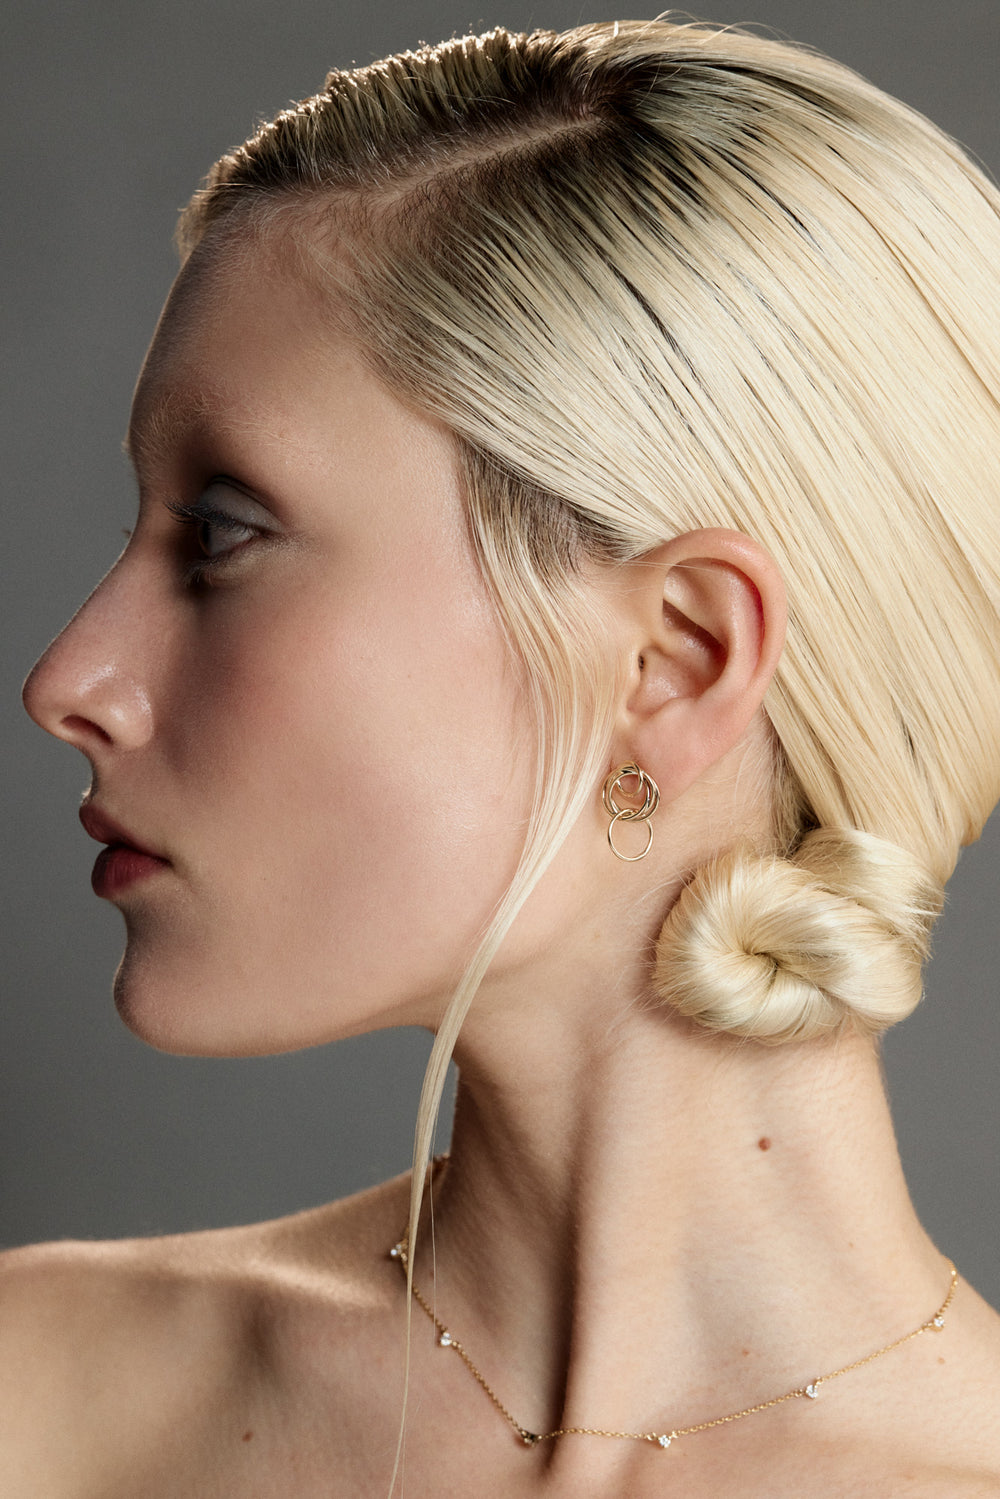 Mini Stevie Earrings | 9K Yellow Gold| Natasha Schweitzer